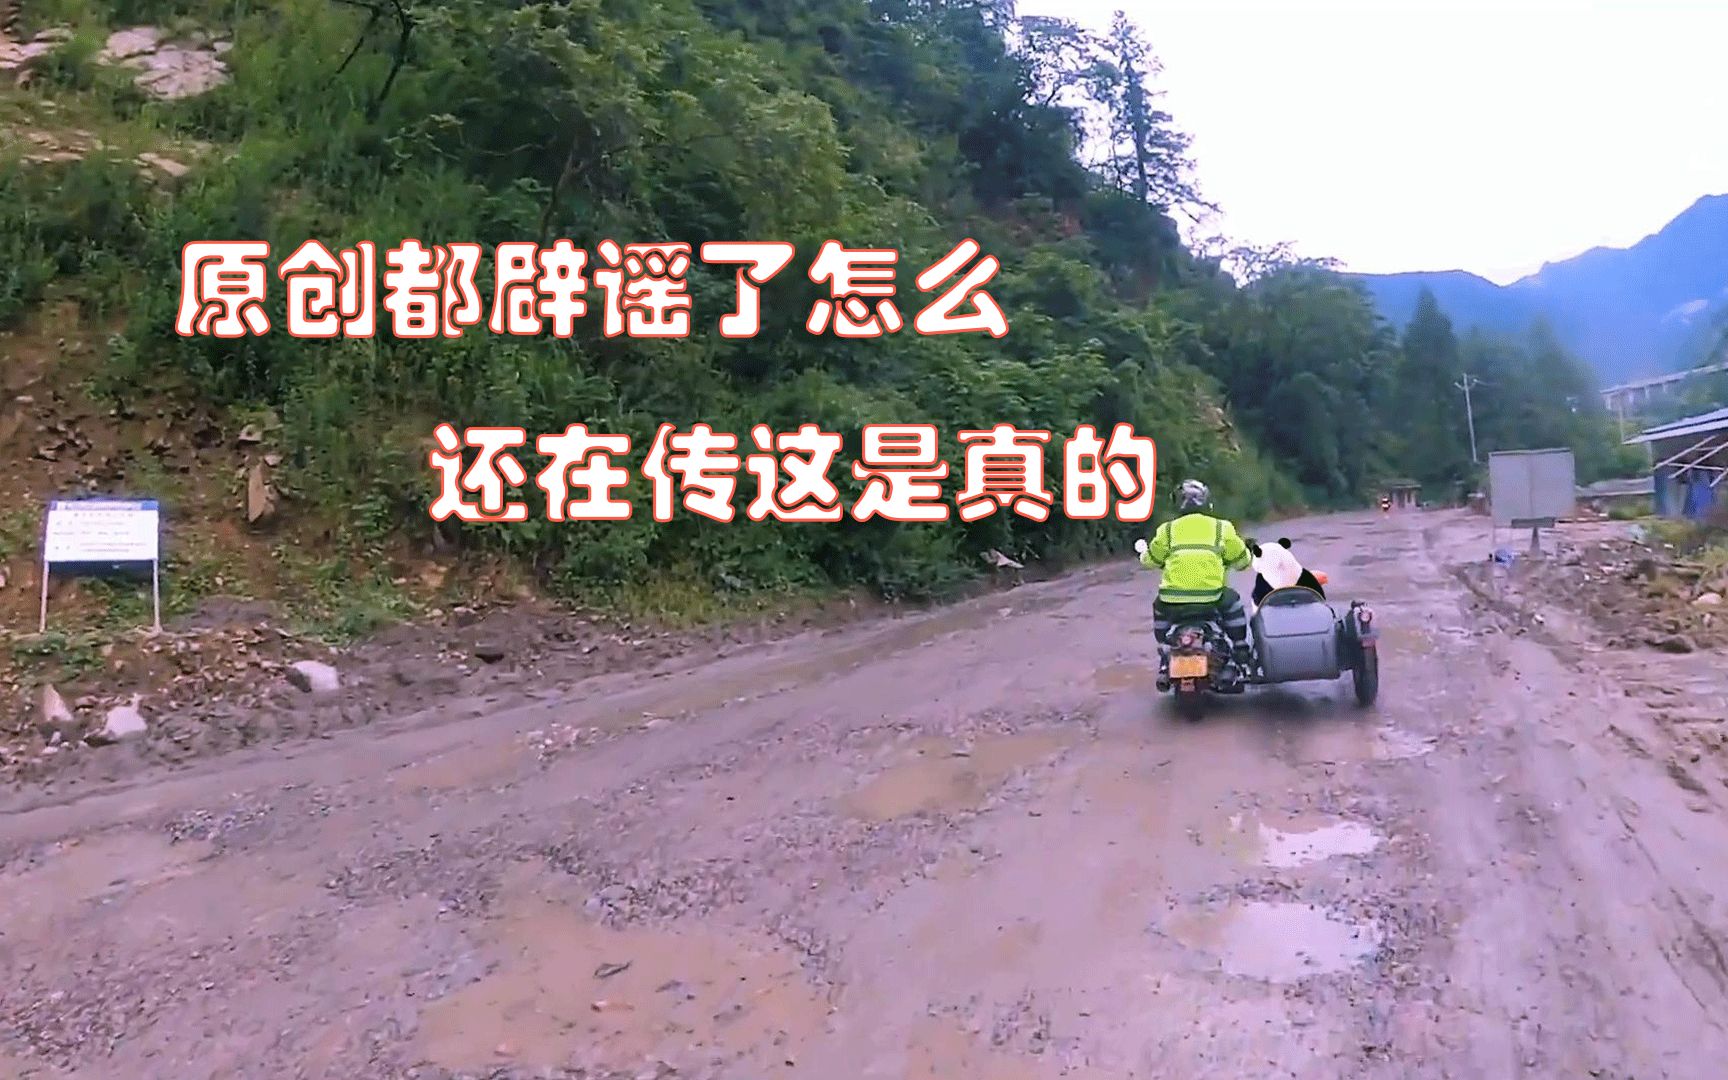 大熊猫福多多坐三轮车的视频原创来了，造谣一张嘴，辟谣跑断腿。